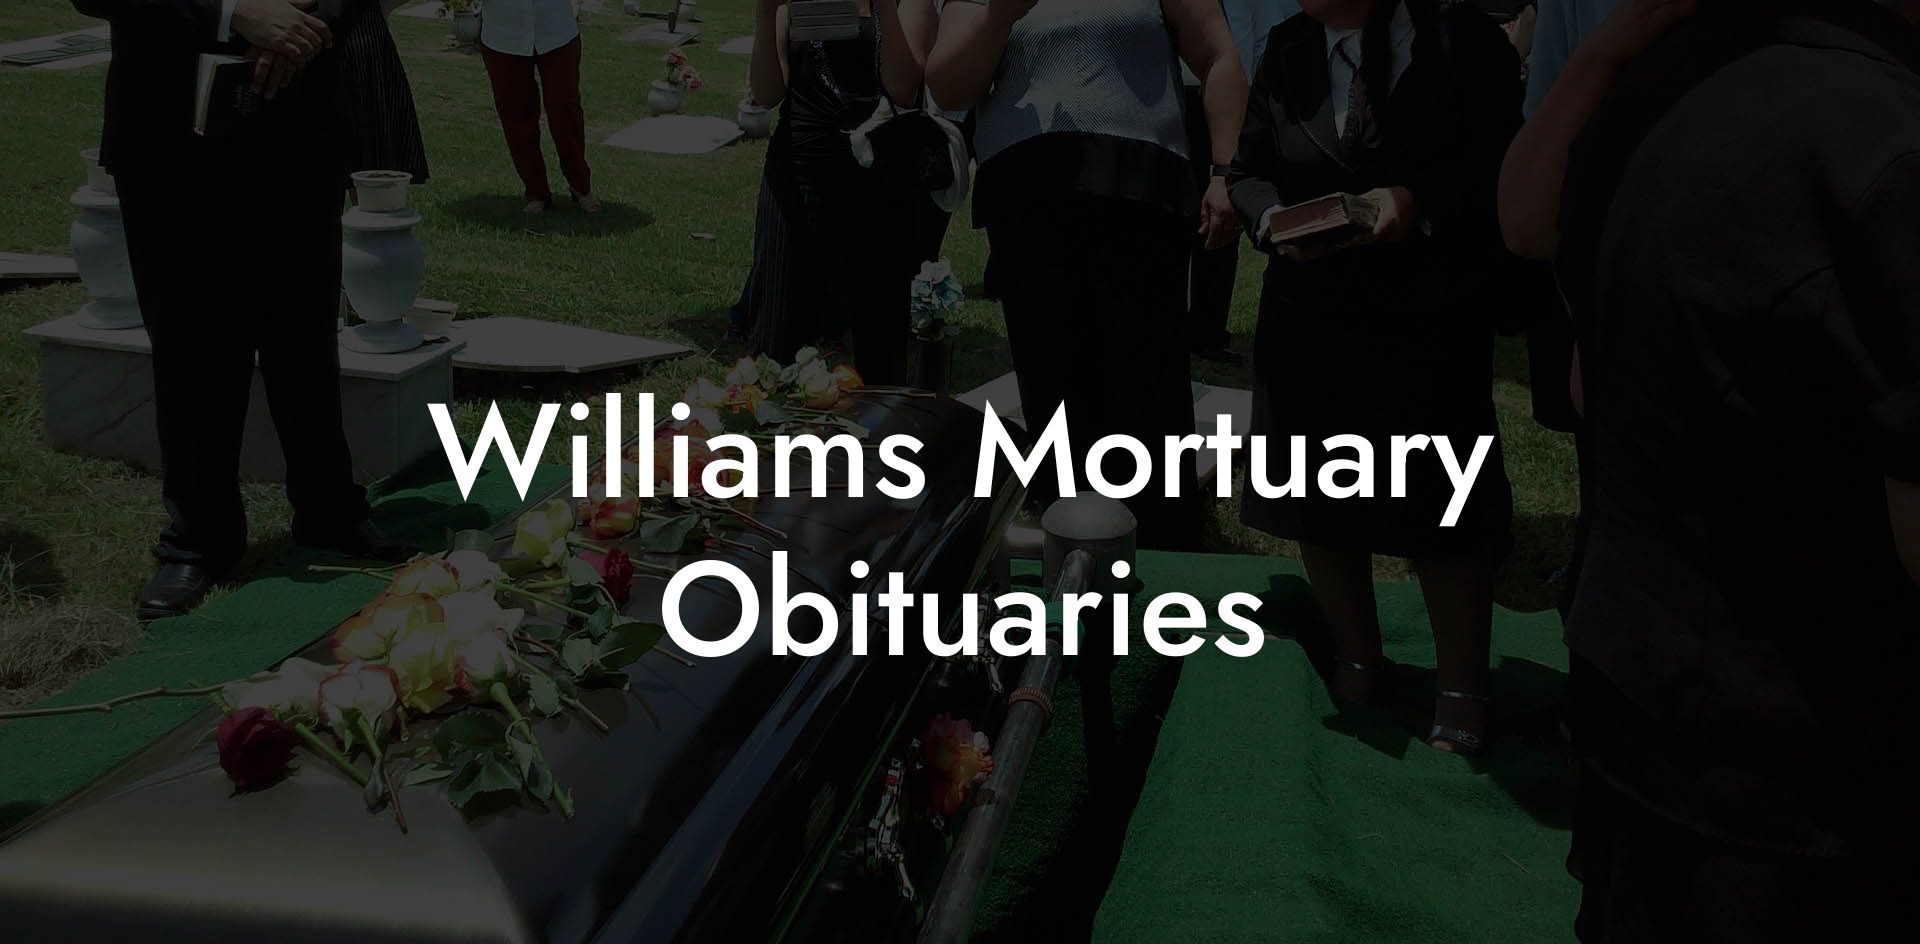 Williams Mortuary Obituaries